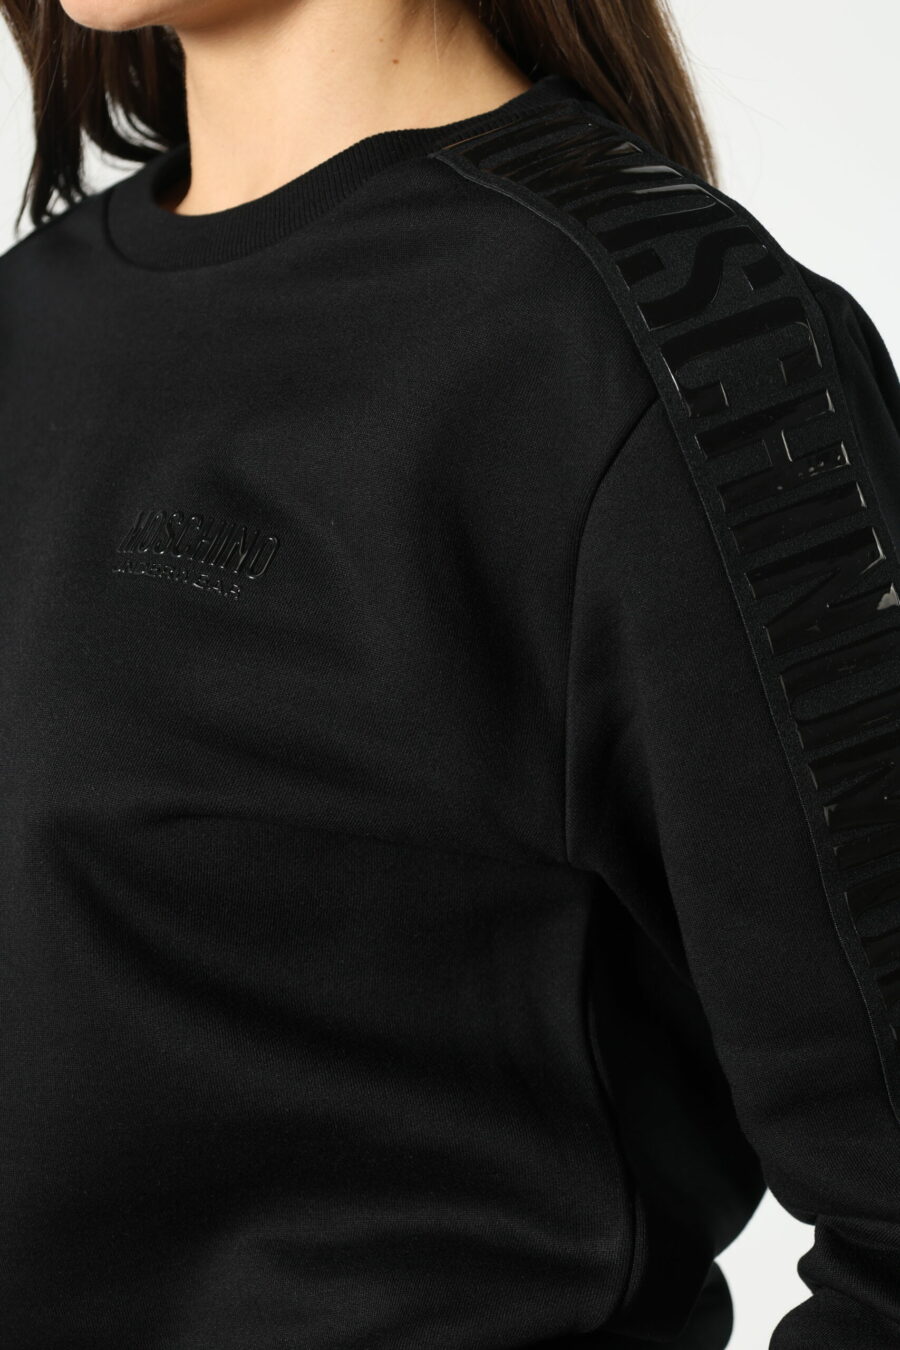 Schwarzes Sweatshirt mit monochromem Bandlogo an den Seiten - 8052865435499 471 skaliert